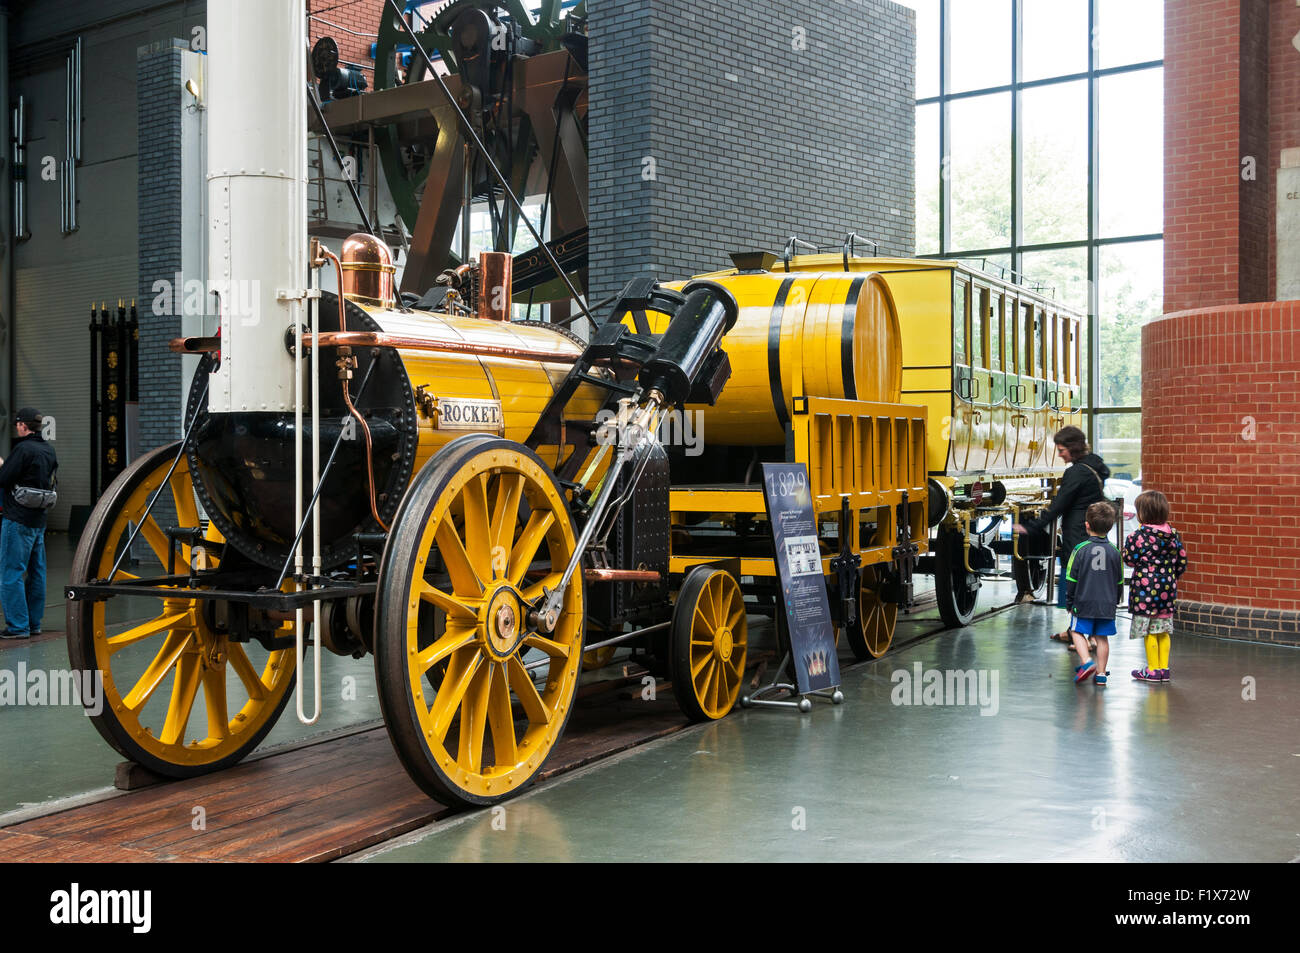 Replica, partie sectionnées de Stephenson's Rocket locomotive chez le National Railway Museum, City of York, Yorkshire, Angleterre, Royaume-Uni Banque D'Images